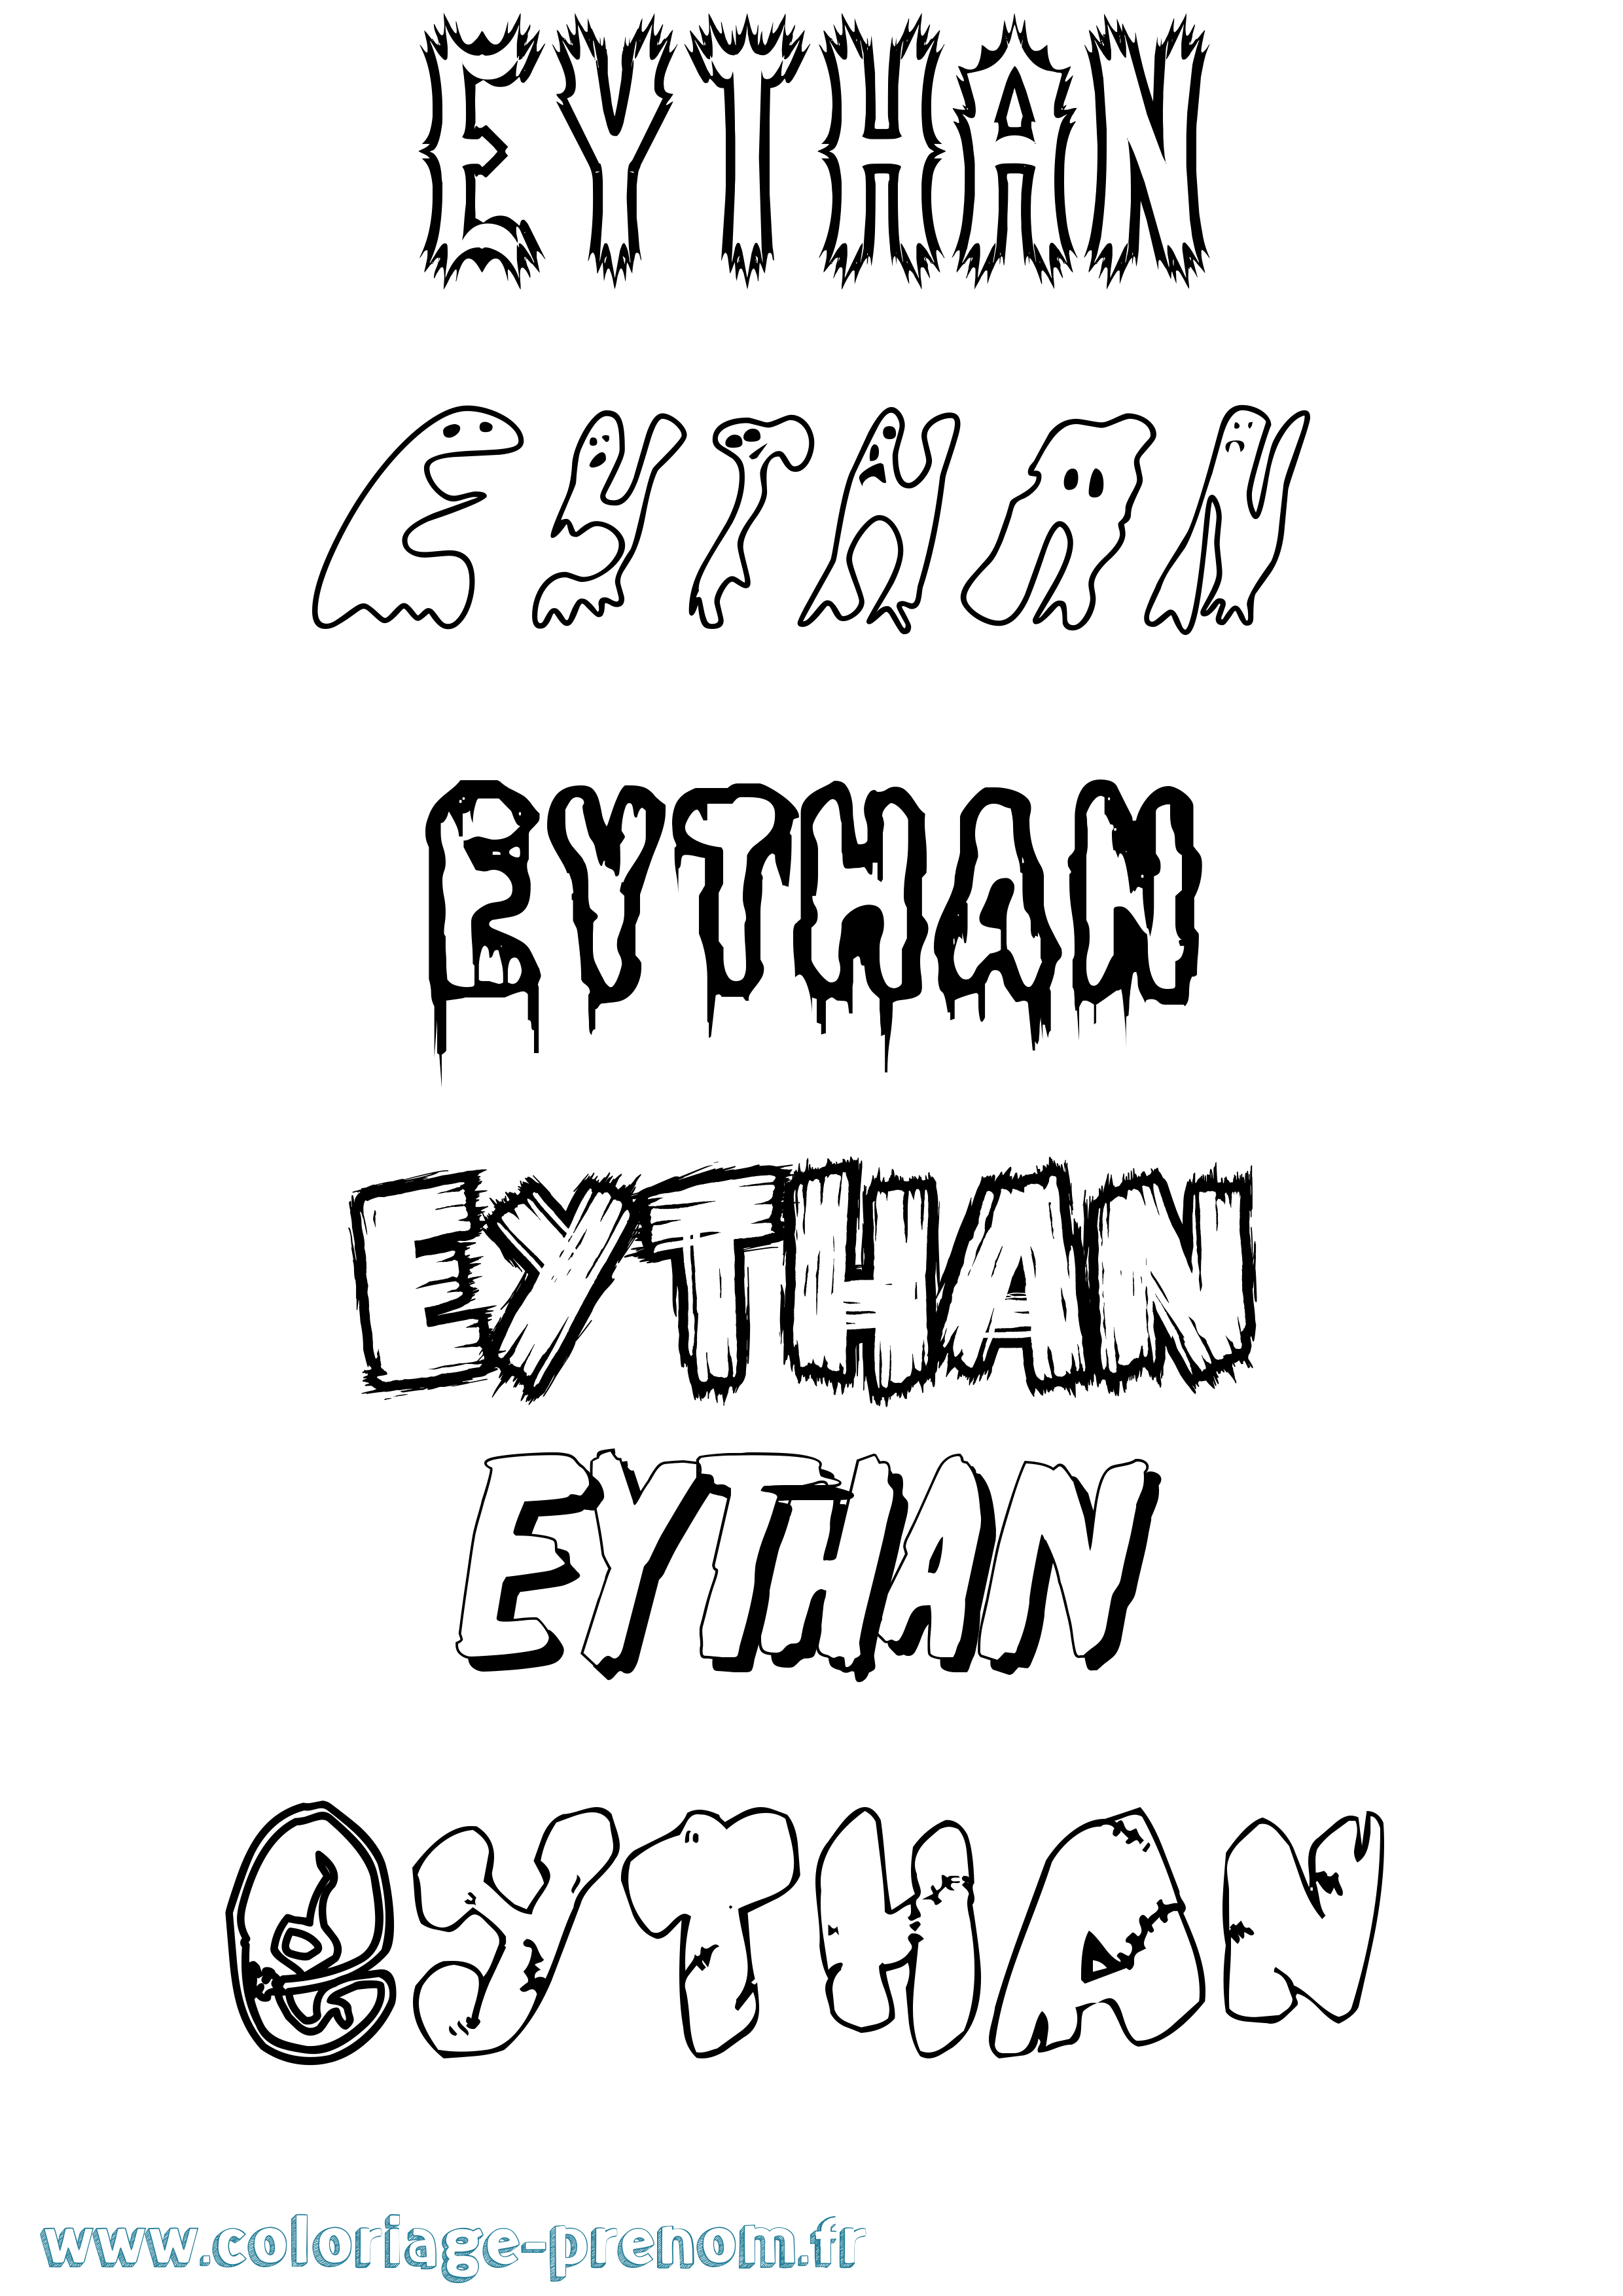 Coloriage prénom Eythan Frisson